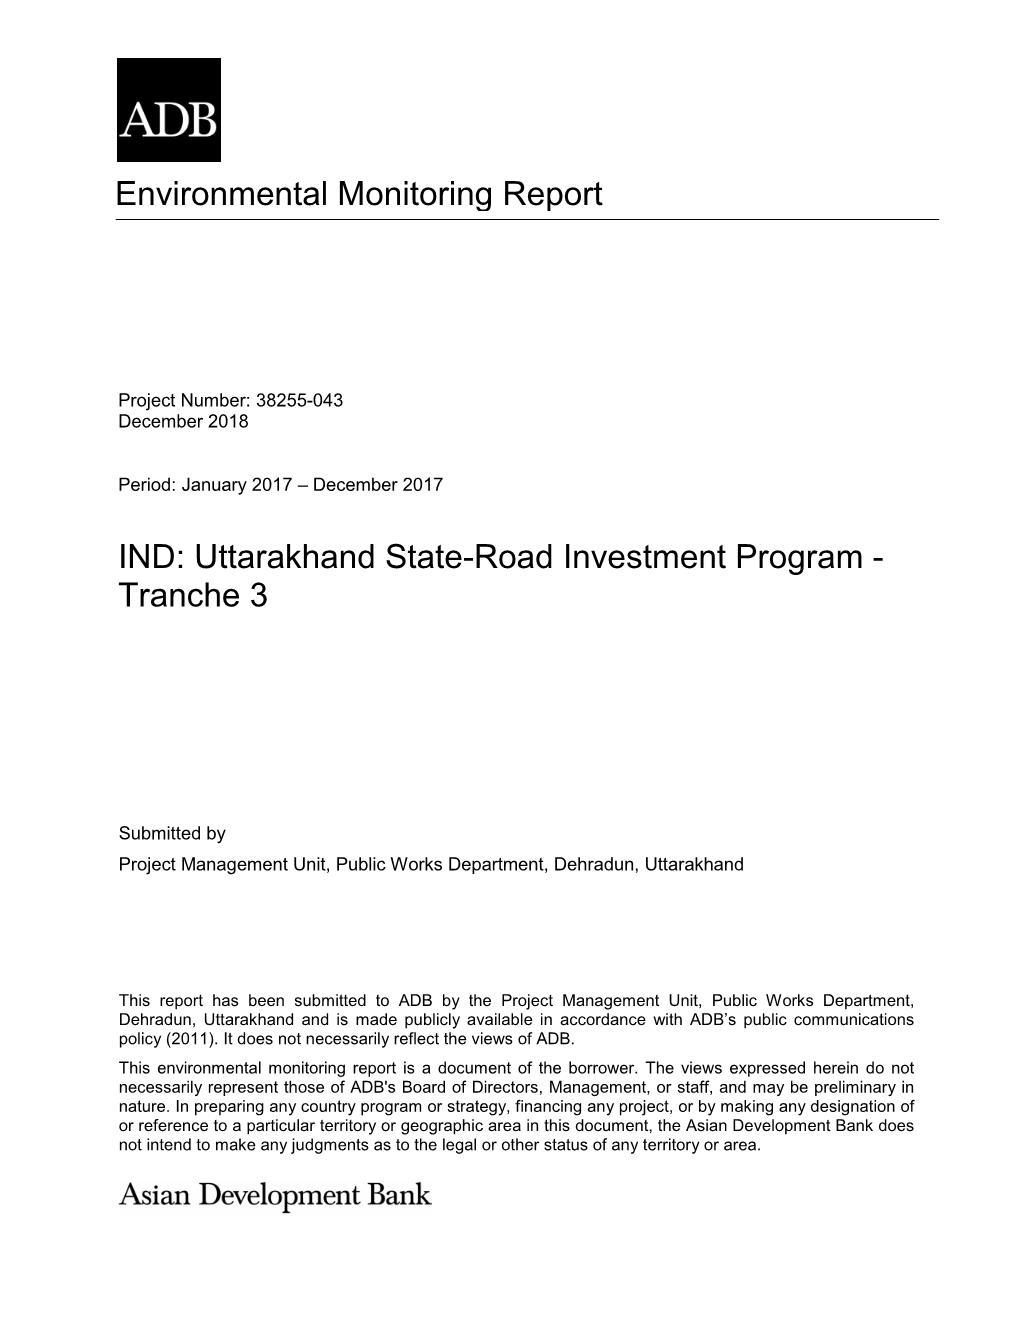 38255-043: Uttarakhand State-Road Investment Program